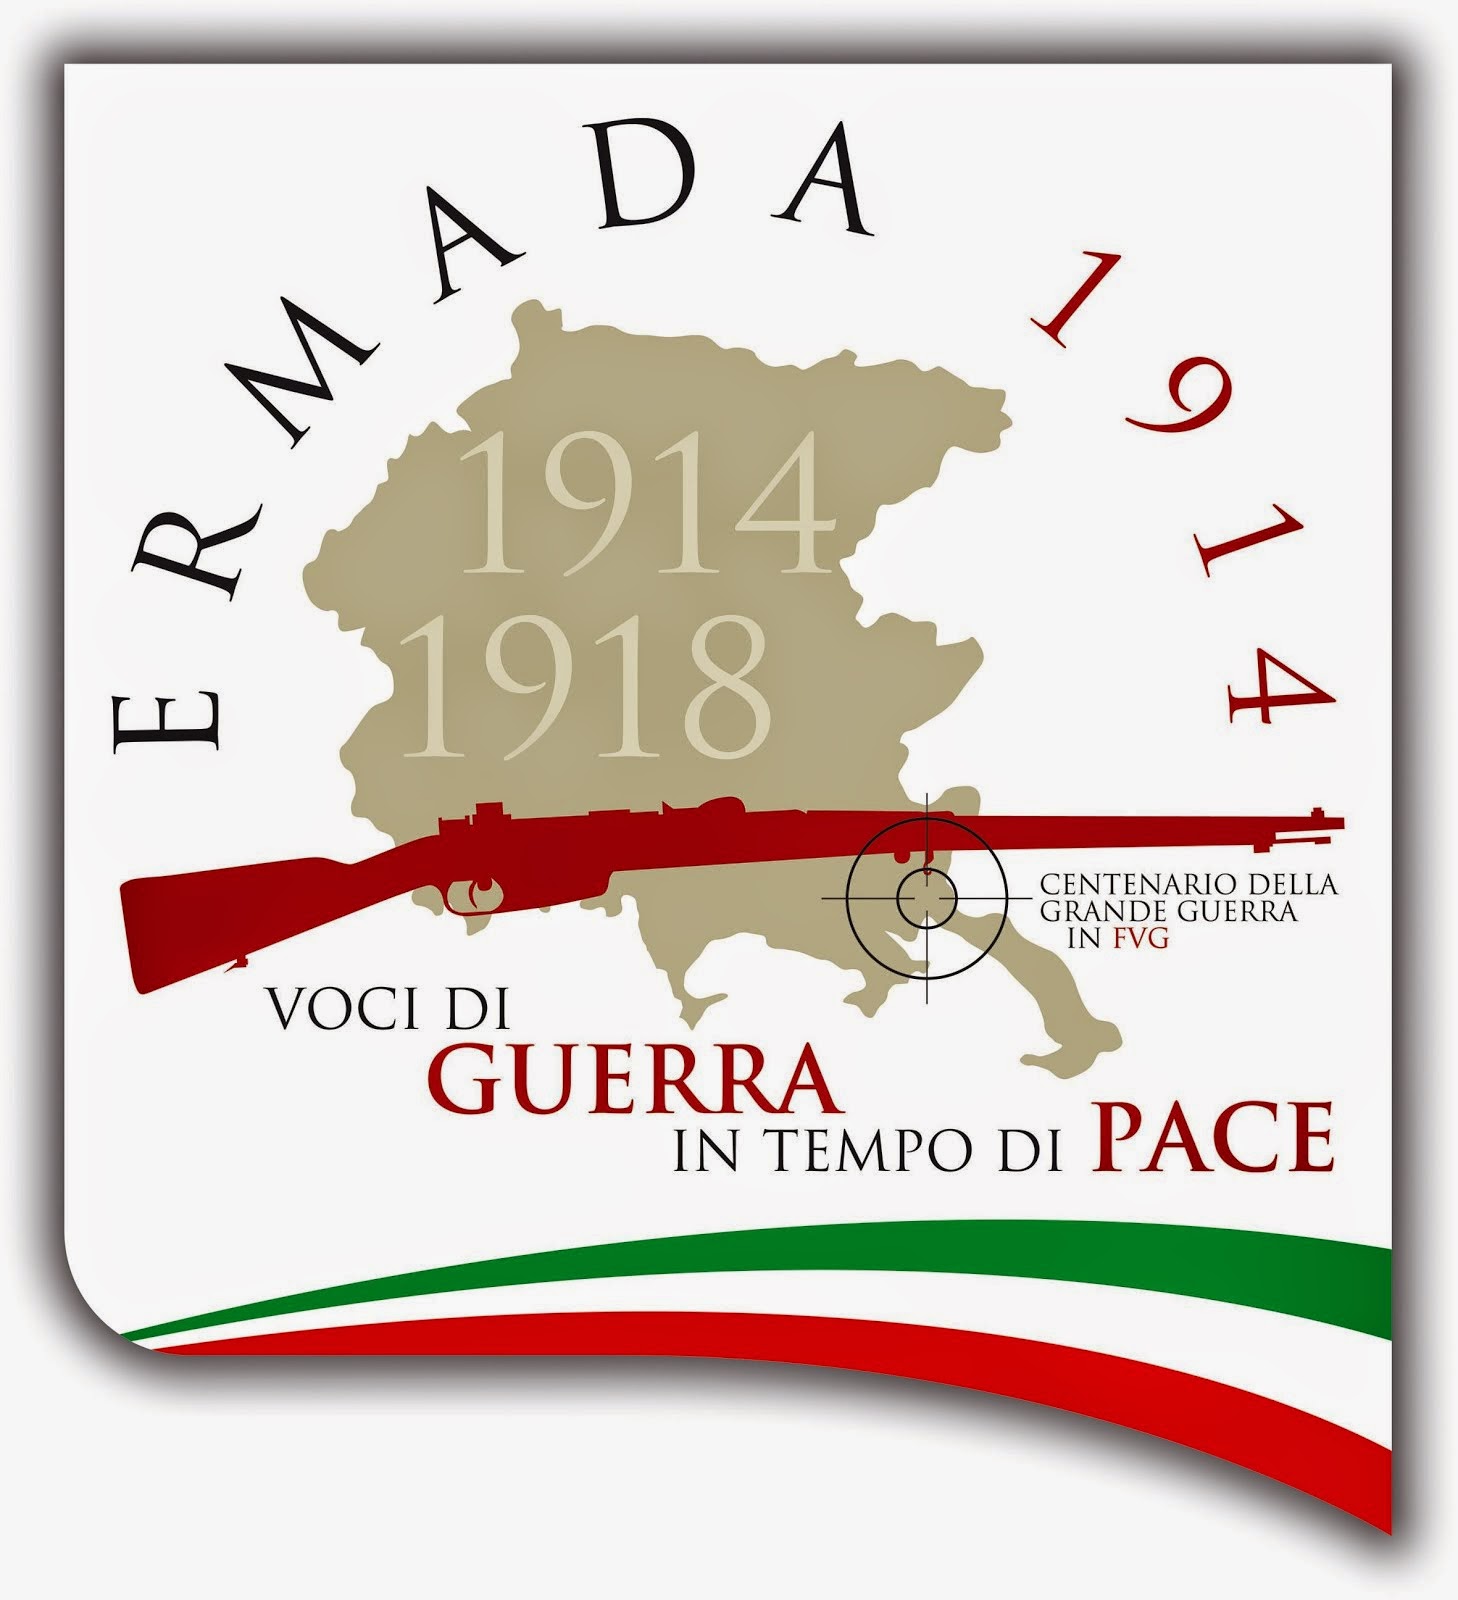 "ERMADA 1914: VOCI DI GUERRA IN TEMPO DI PACE"